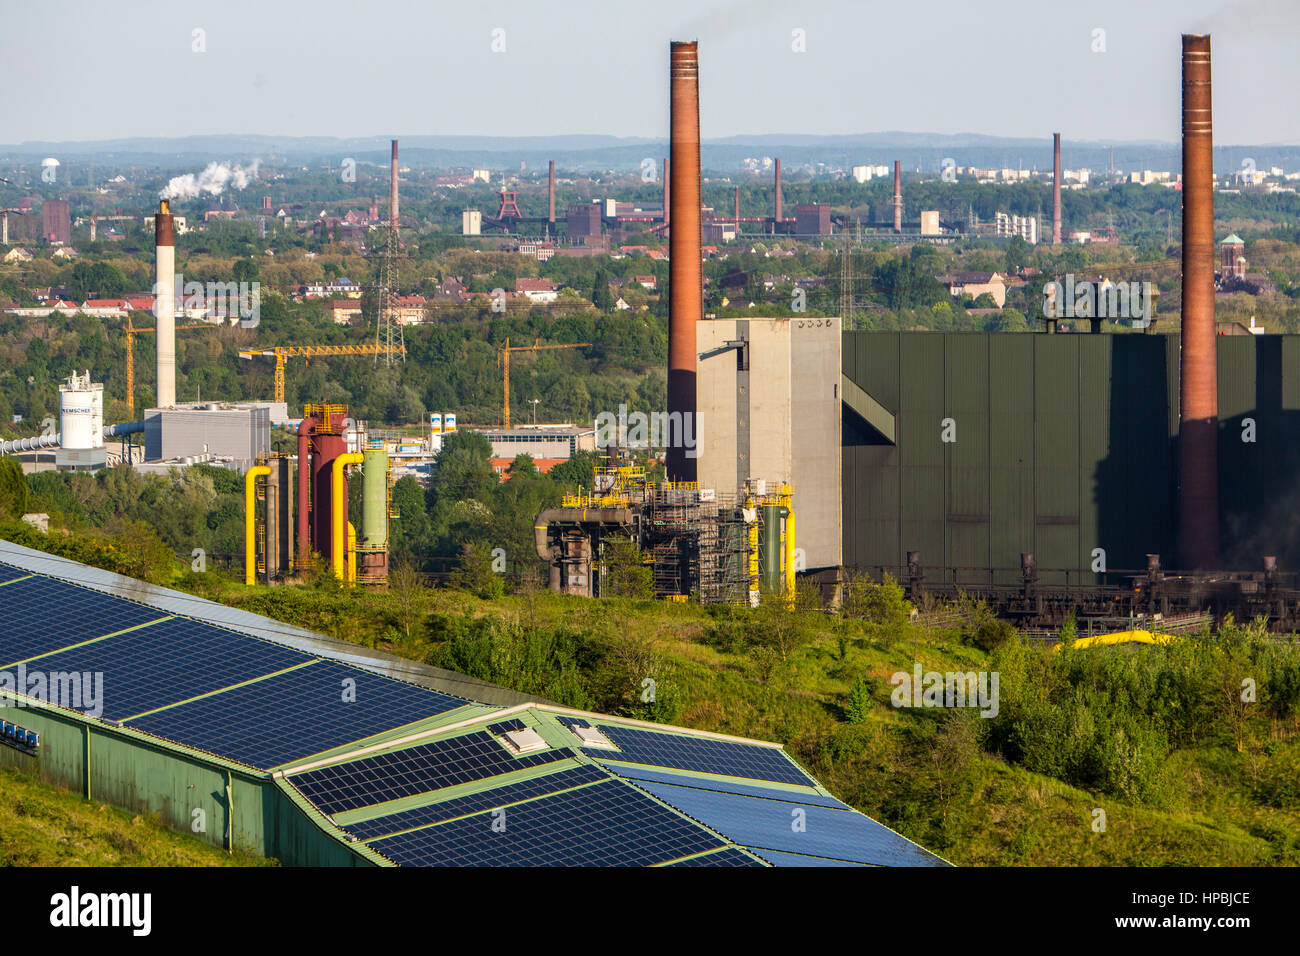 Kokerei Prosper in Bottrop, hinter der Kokerei Zollverein in Essen, vordere Dach der Skihalle Bottrop mit Solarmodulen, gehört heute zu Stockfoto